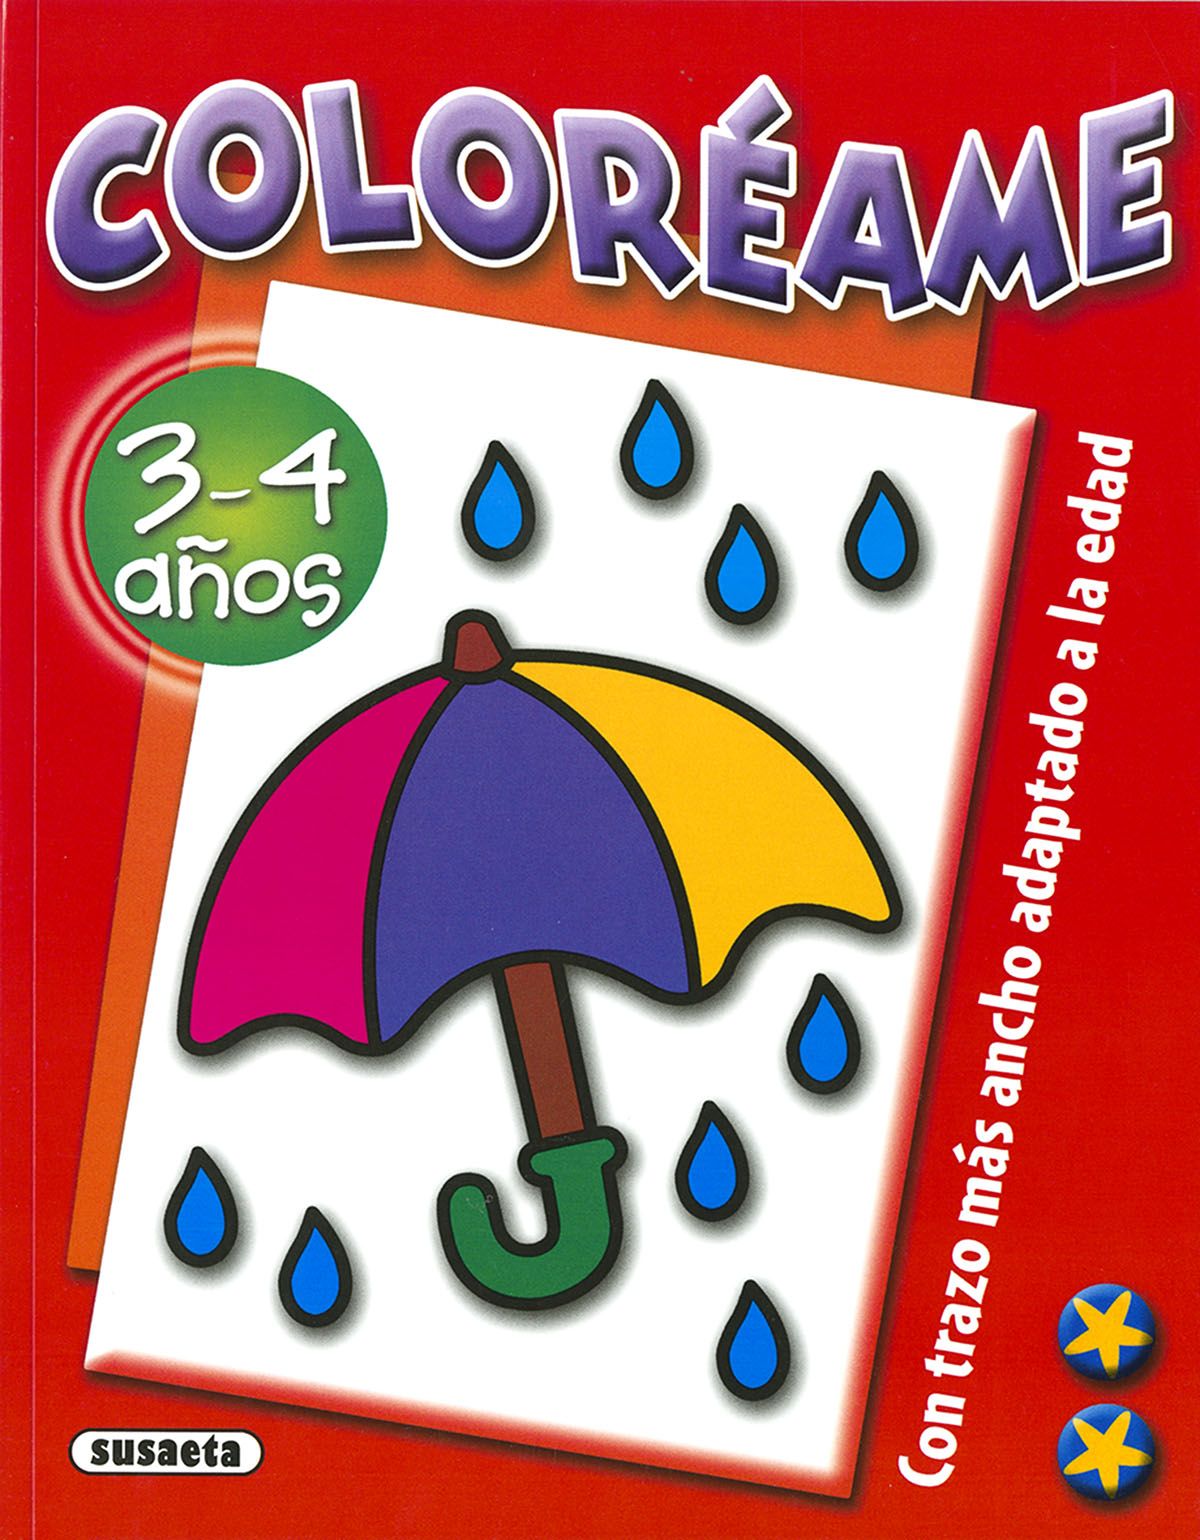 Colorame 3-4 aos